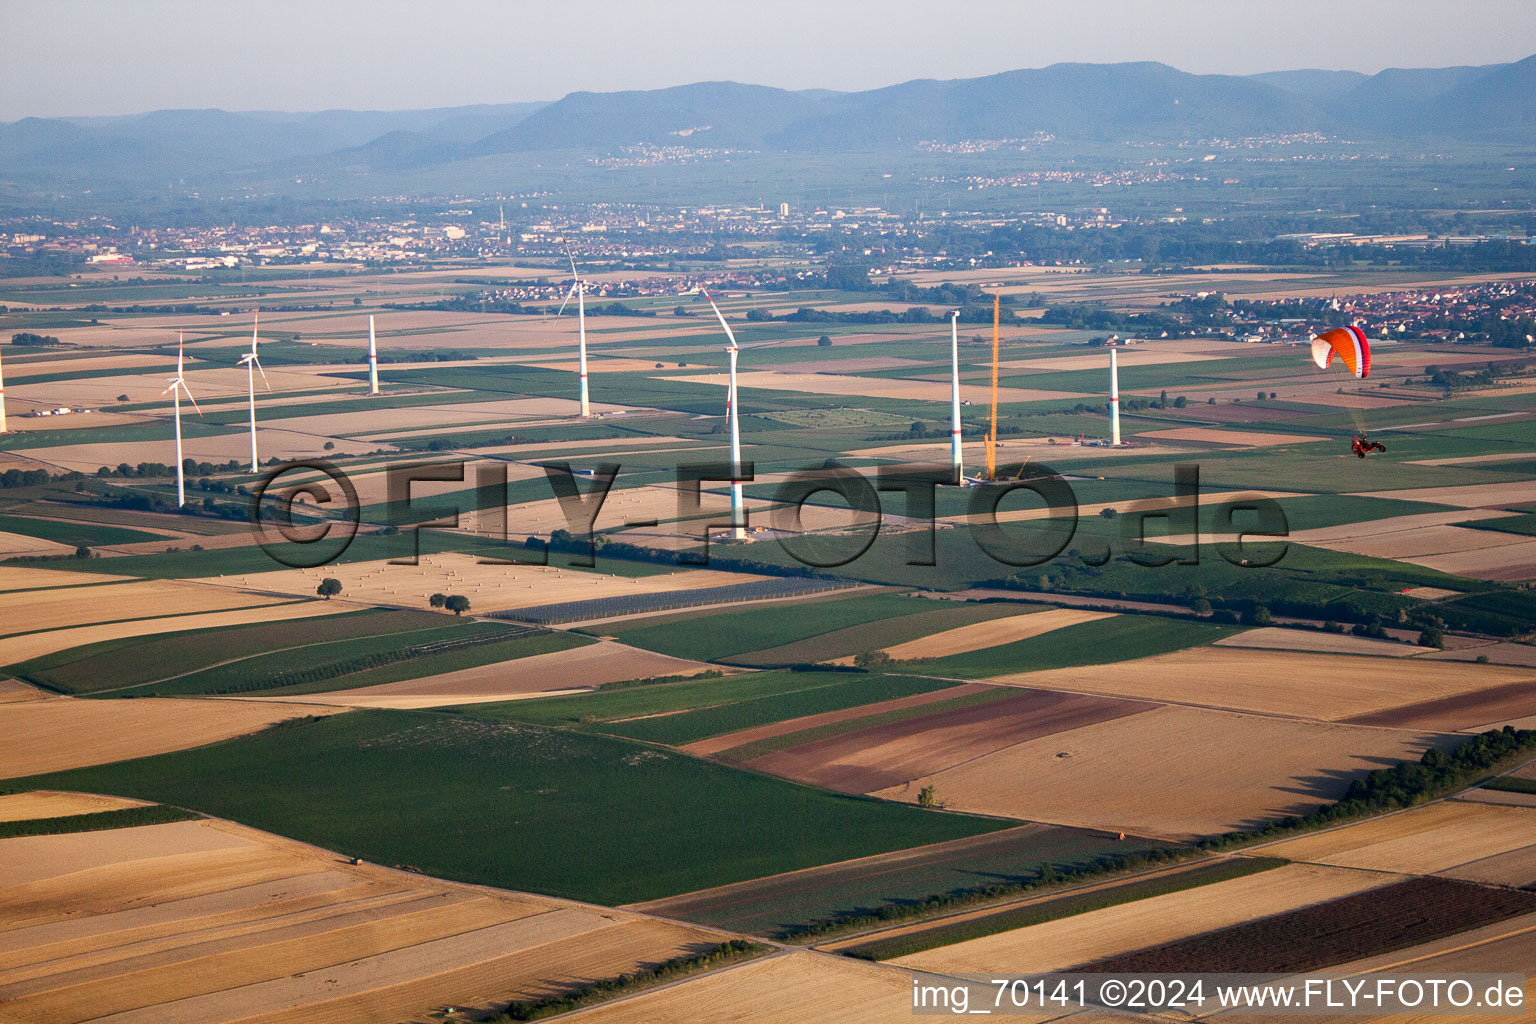 Vue oblique de Parc éolien à Offenbach an der Queich dans le département Rhénanie-Palatinat, Allemagne